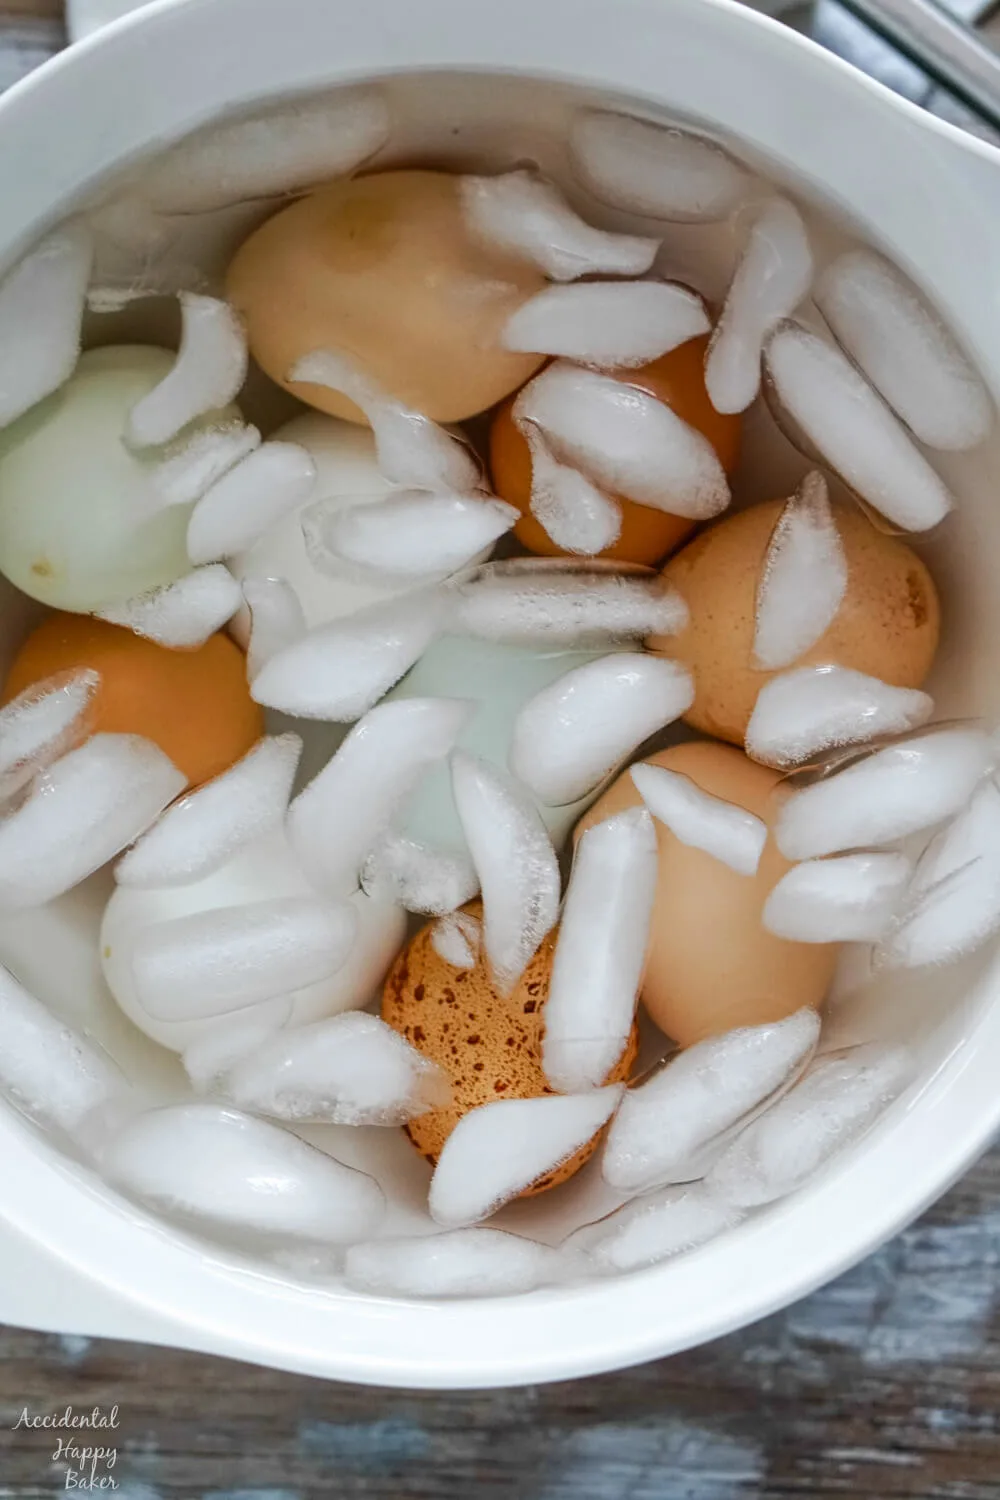 Hard boiled eggs in an ice bath.